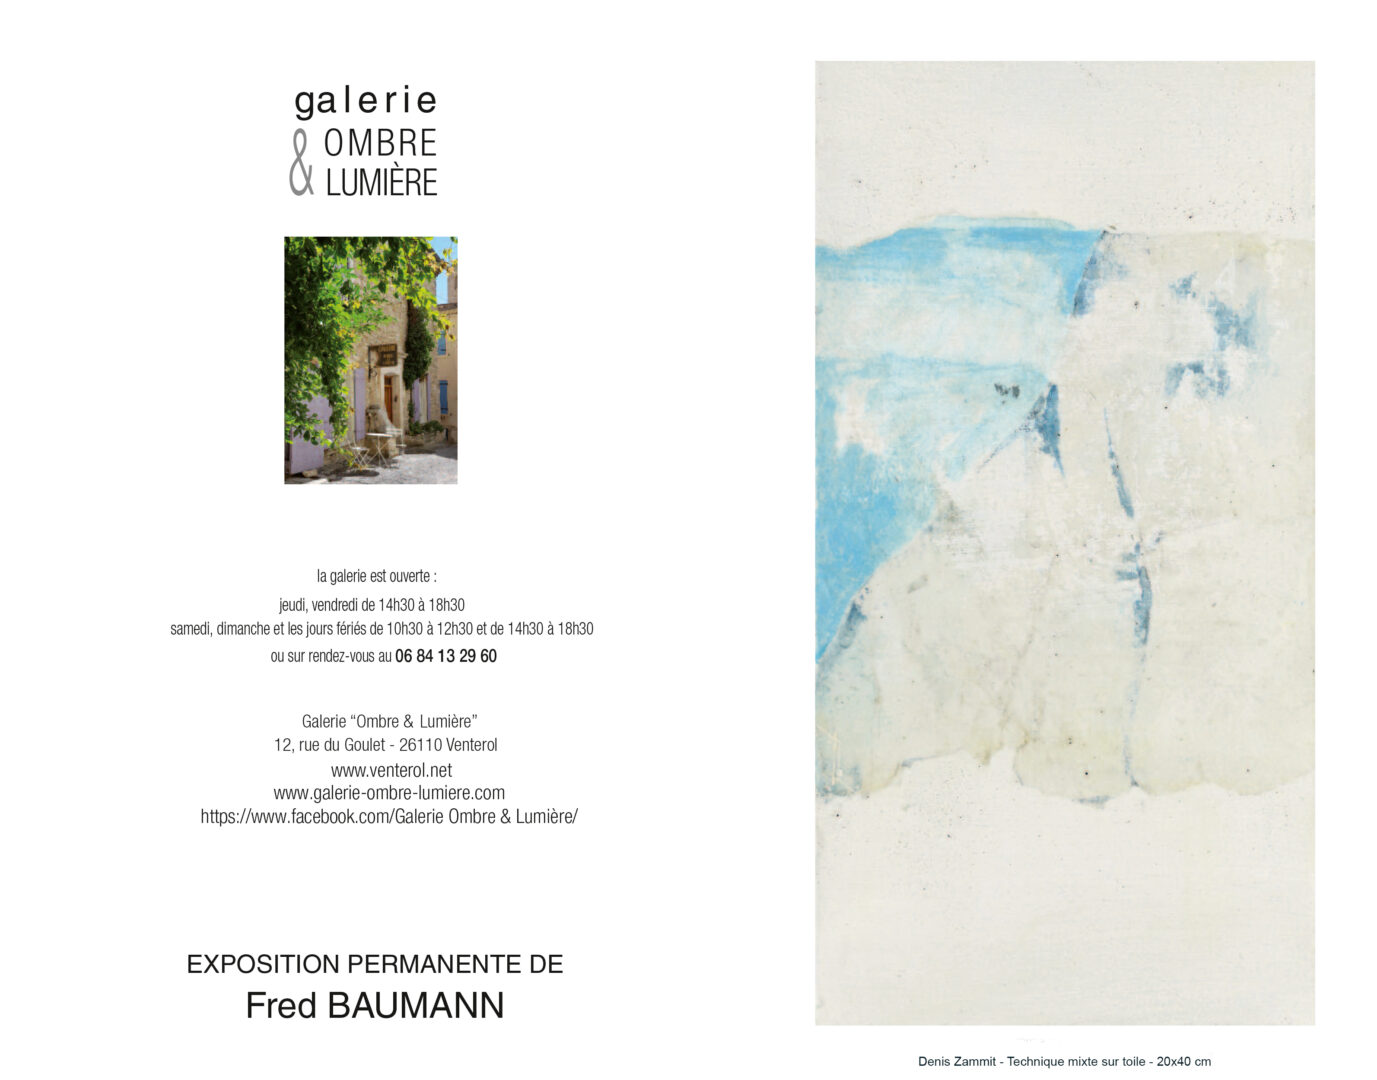 Exposition personnelle - Galerie "Ombre et Lumière" - Venterol